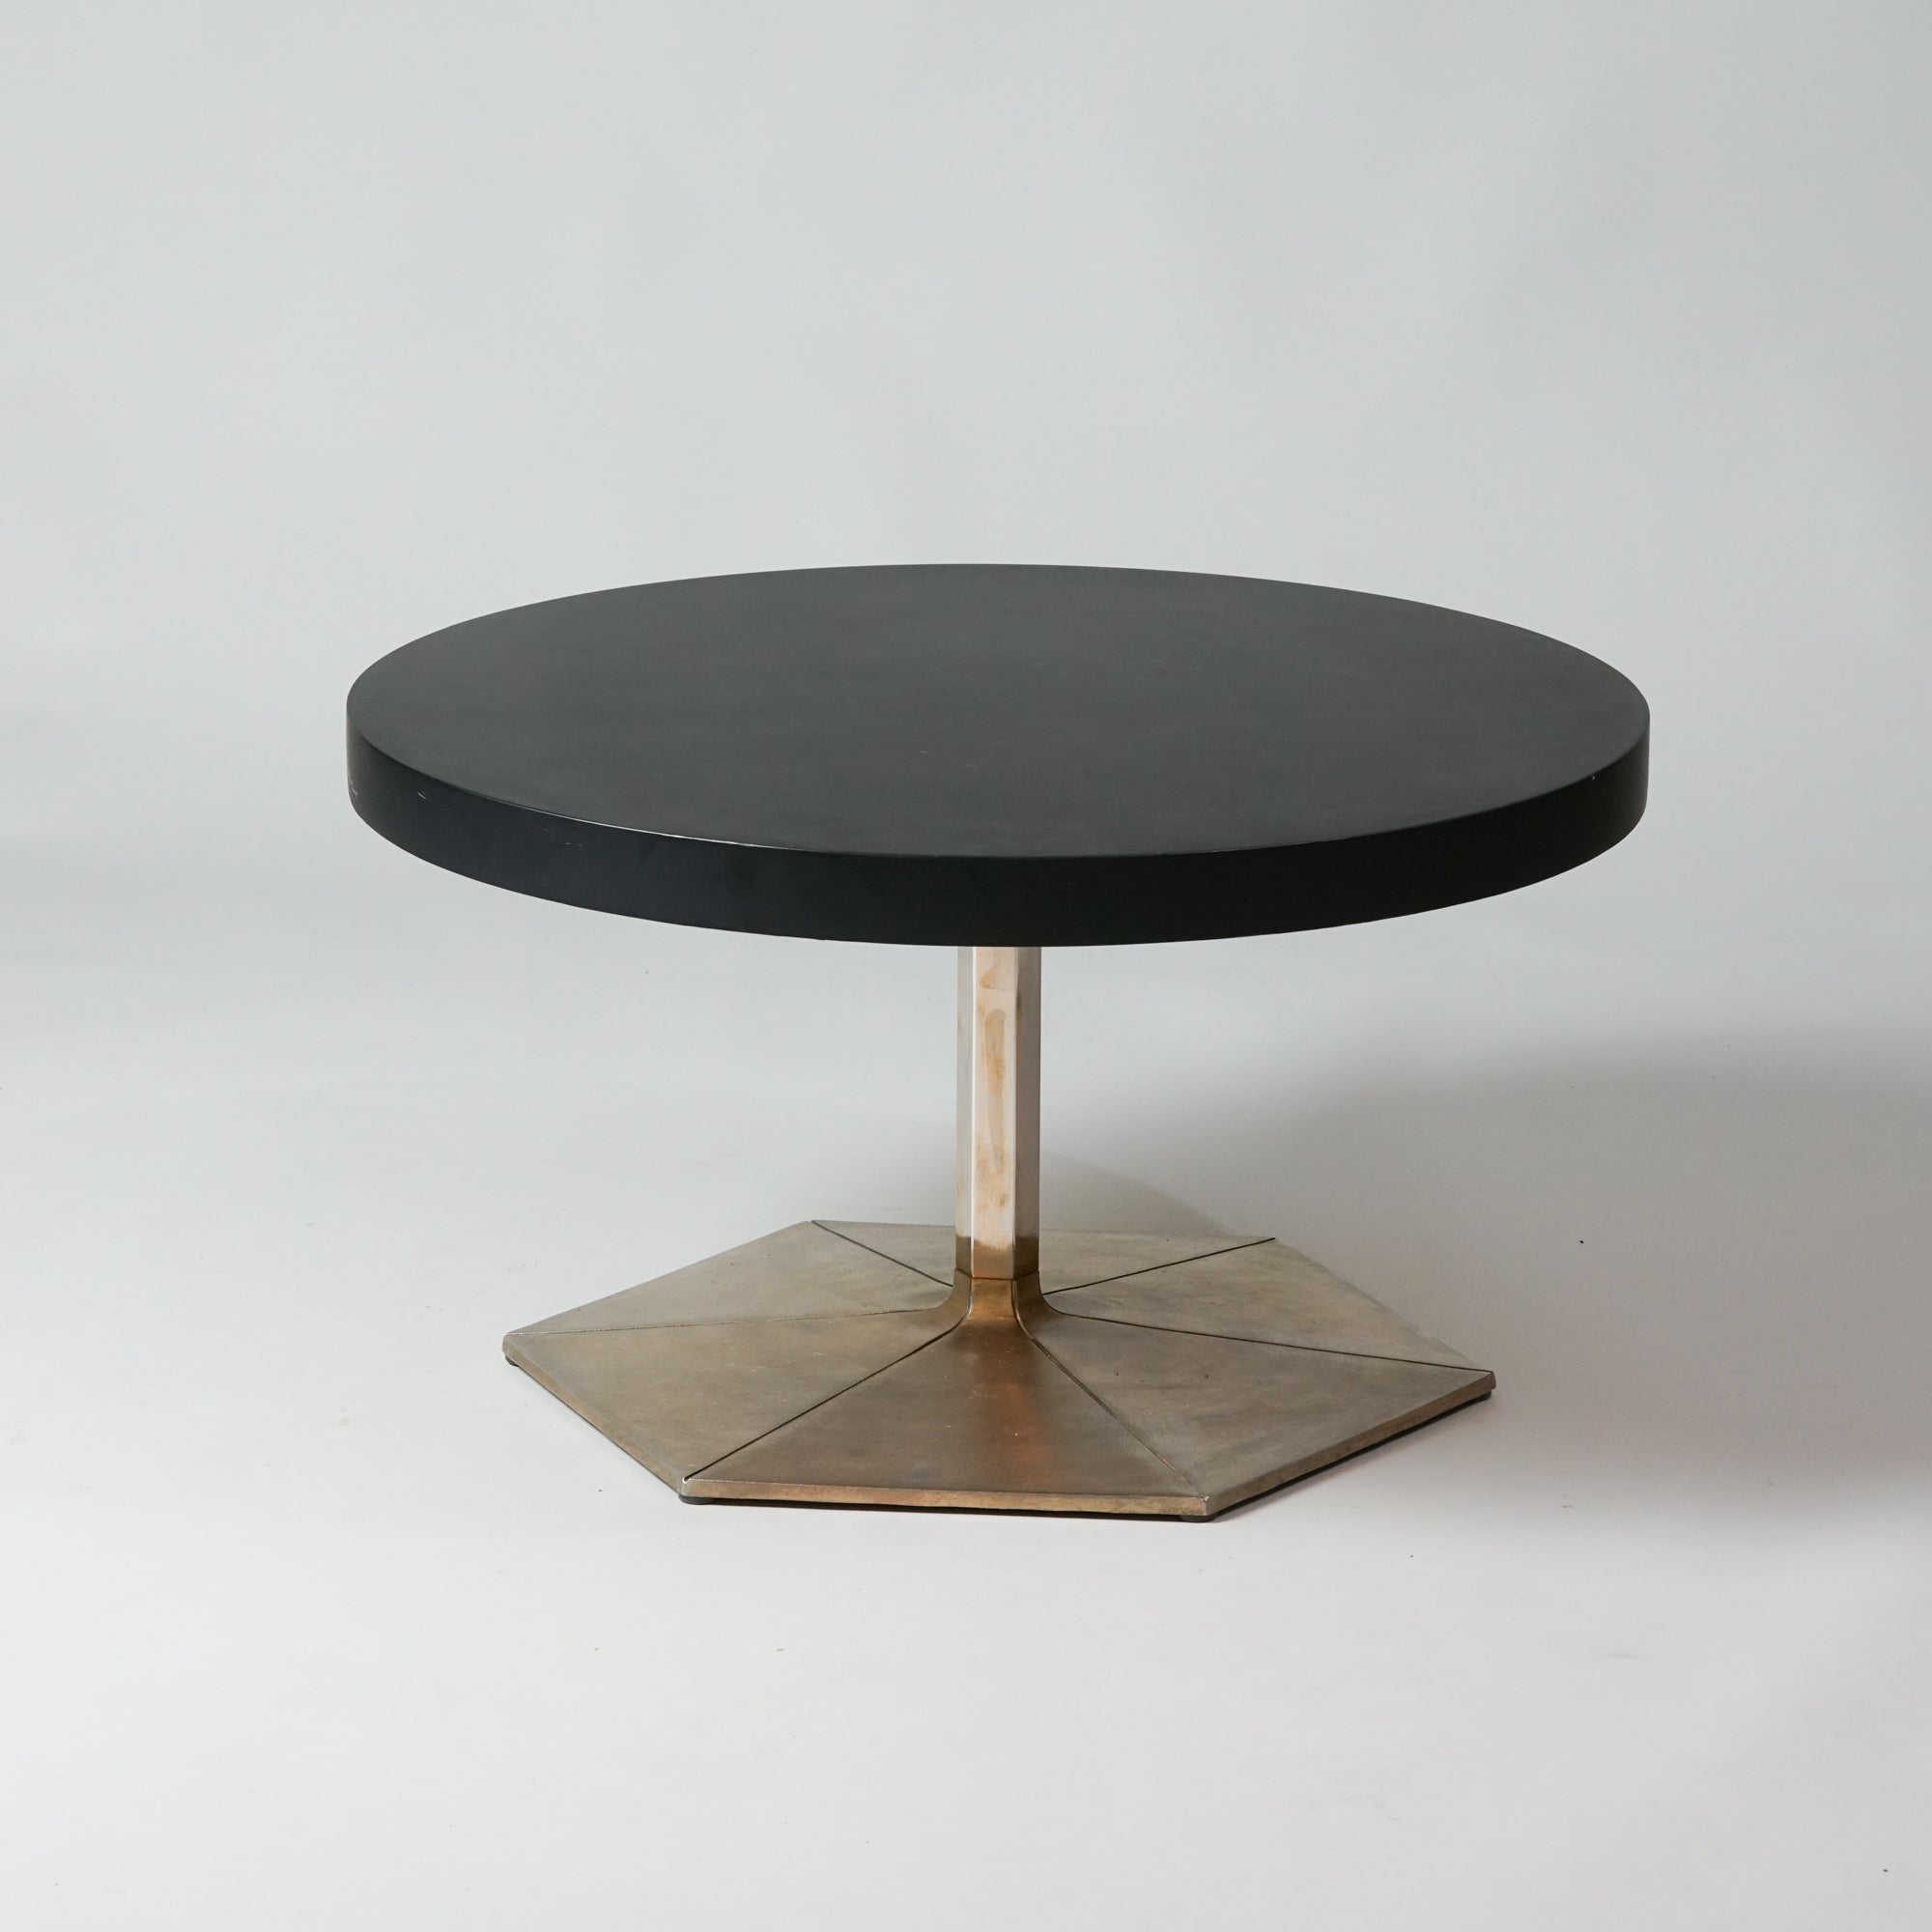 Pyöreä musta puupöytä, jossa kuusikulmion muotoinen metallinen jalka. 